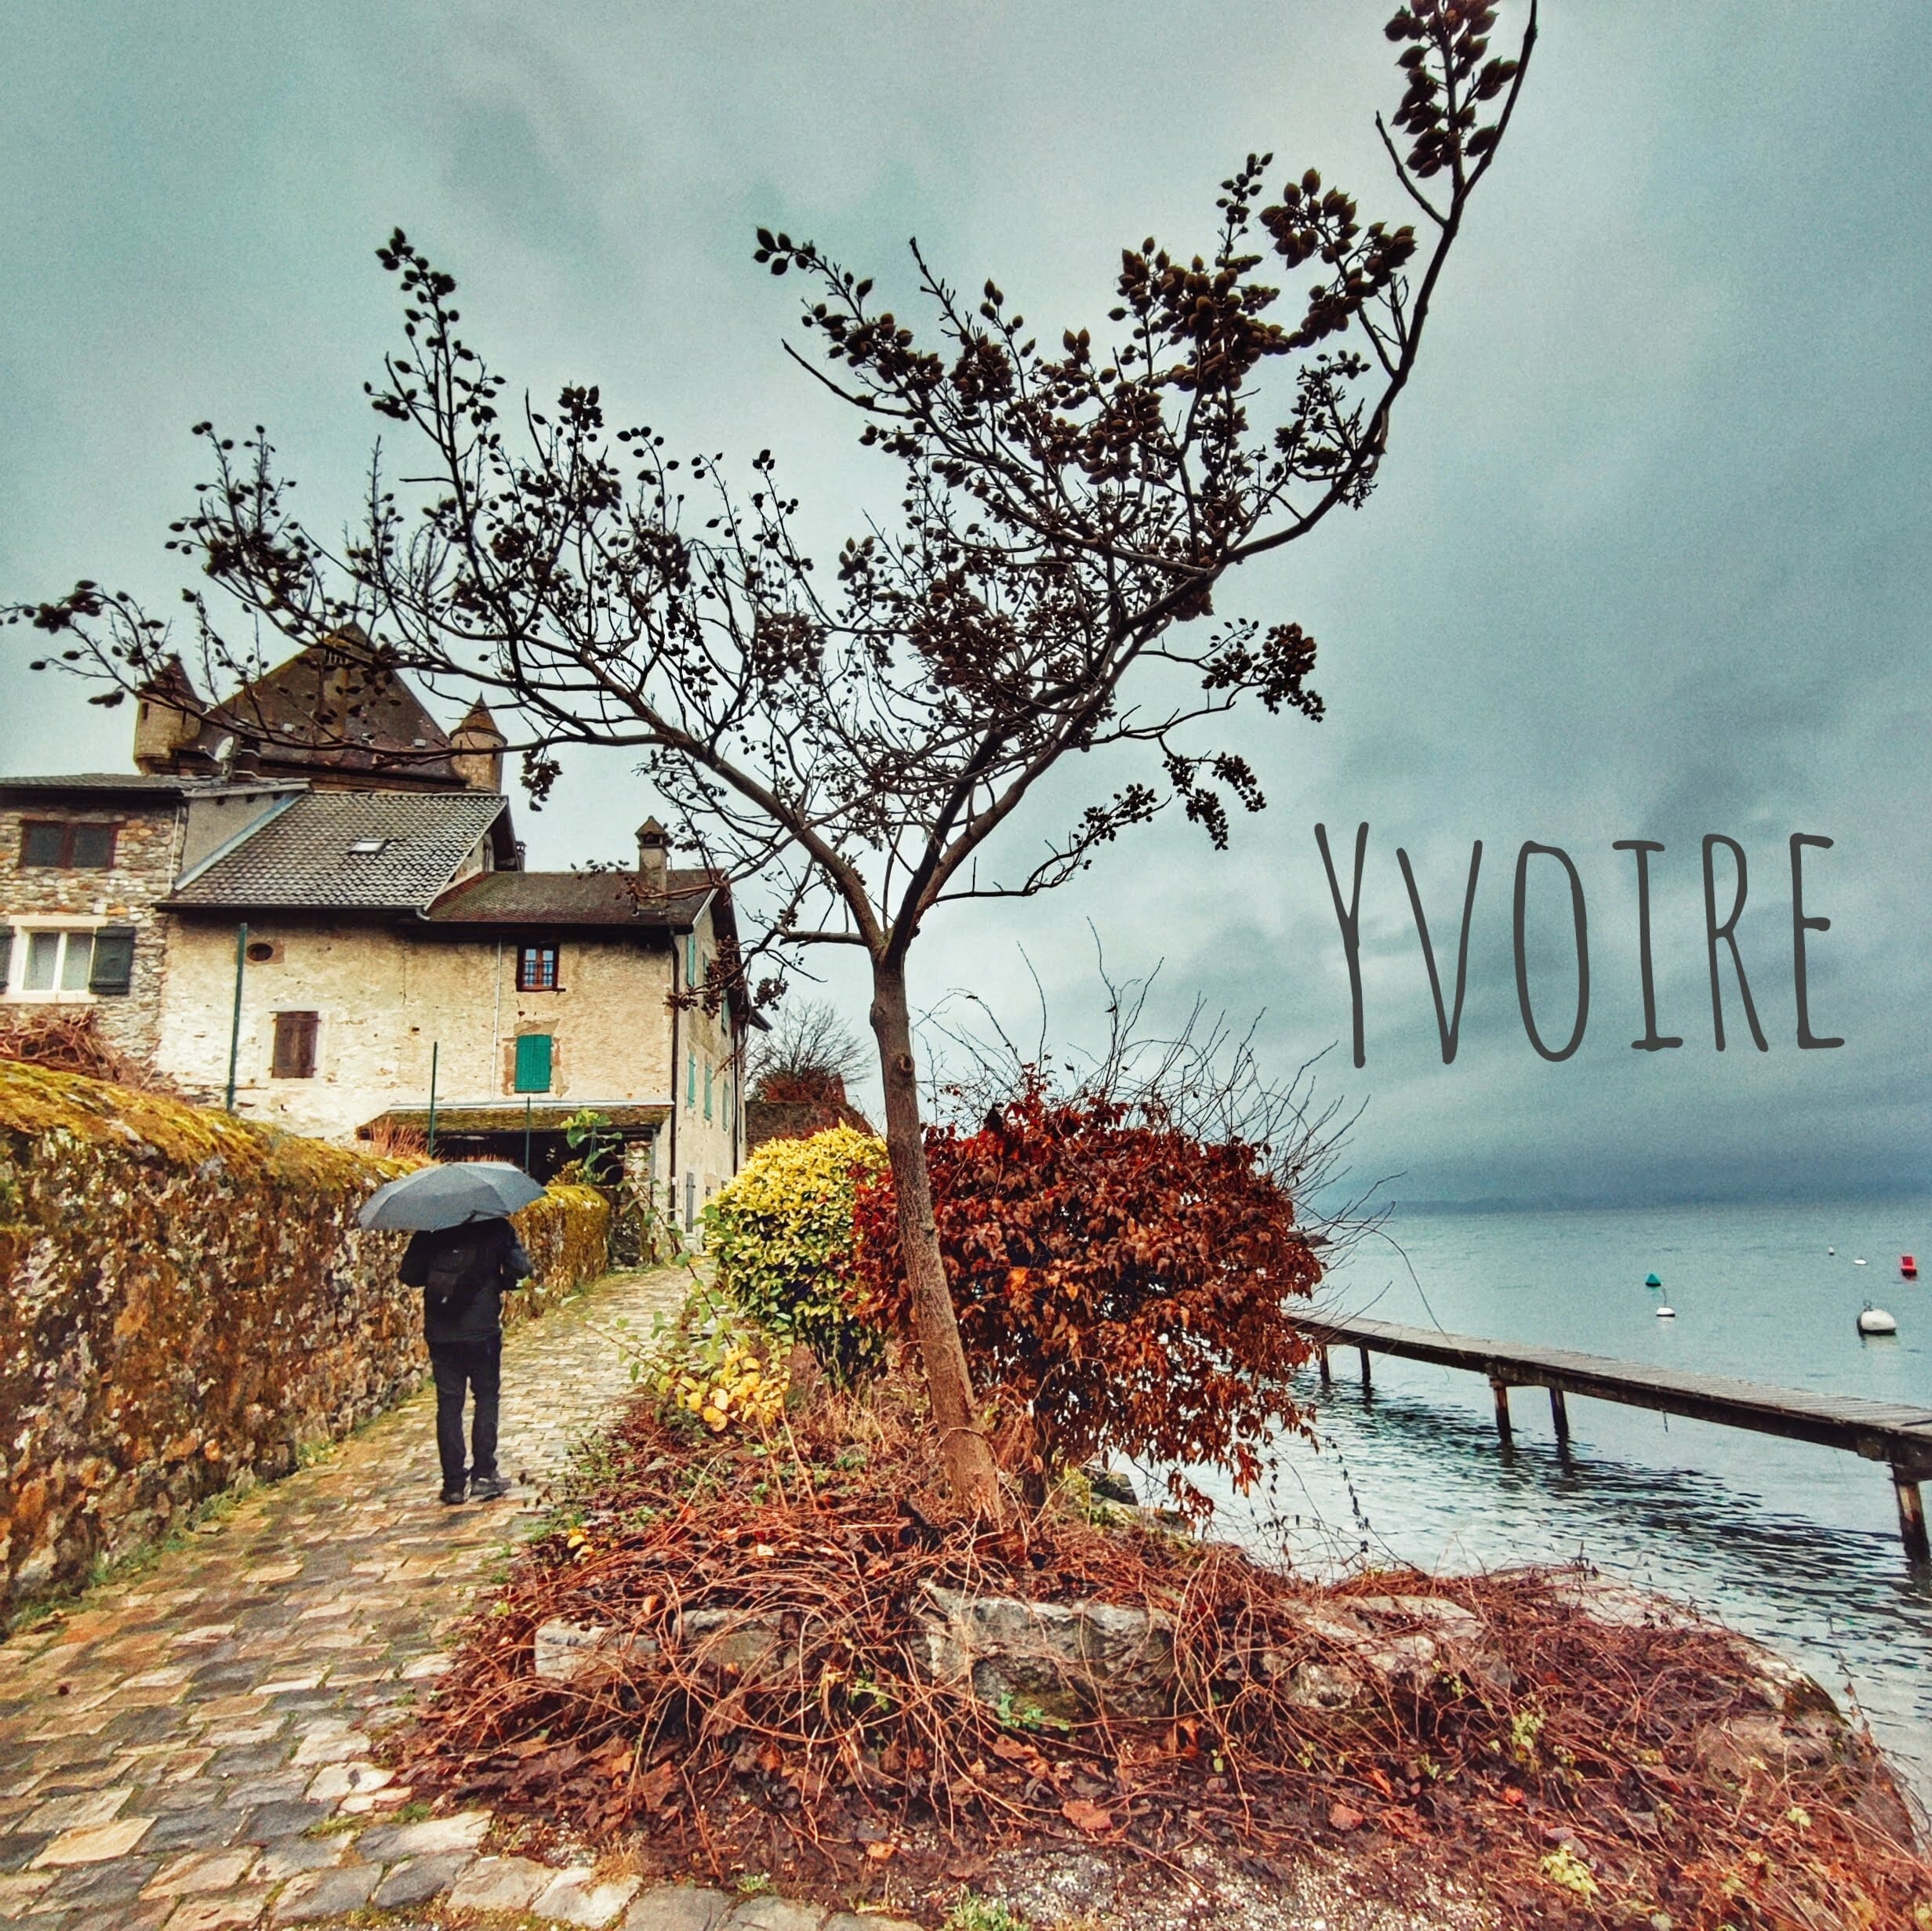 Lire la suite de l'article Yvoire que voir et faire dans l'un des plus beaux villages de France